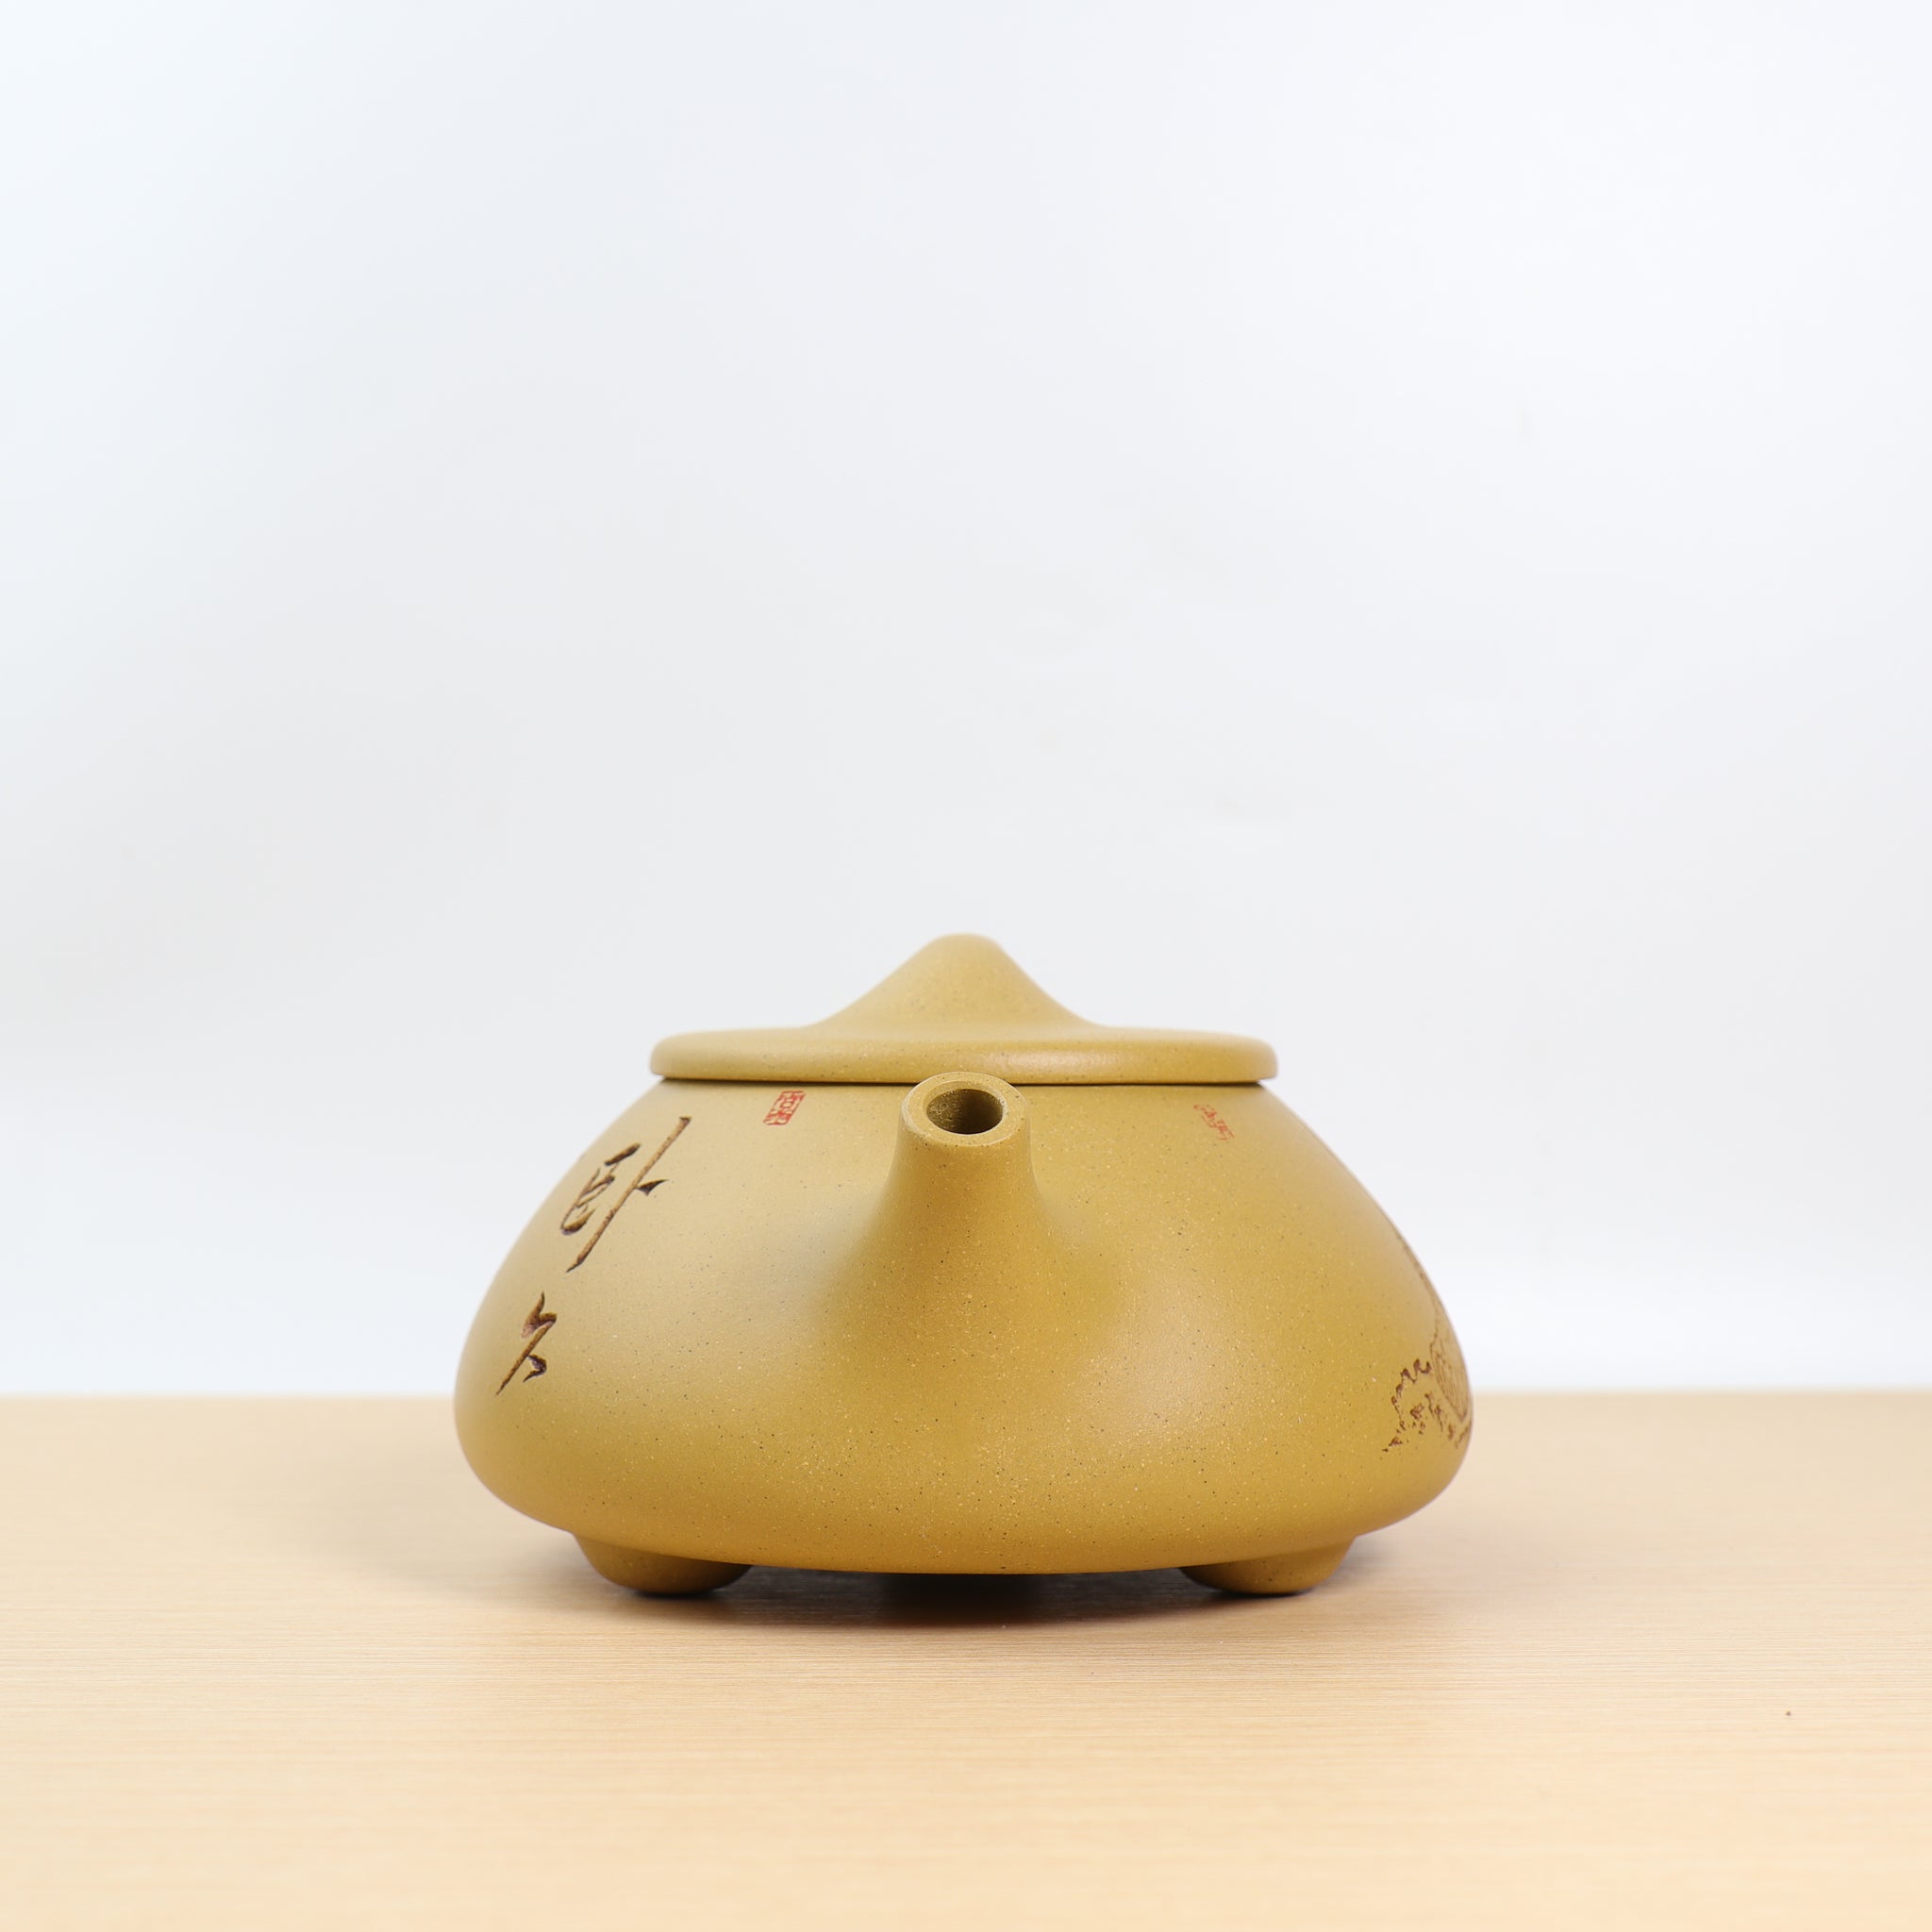 【景舟石瓢】黃金段泥刻畫書法紫砂茶壺